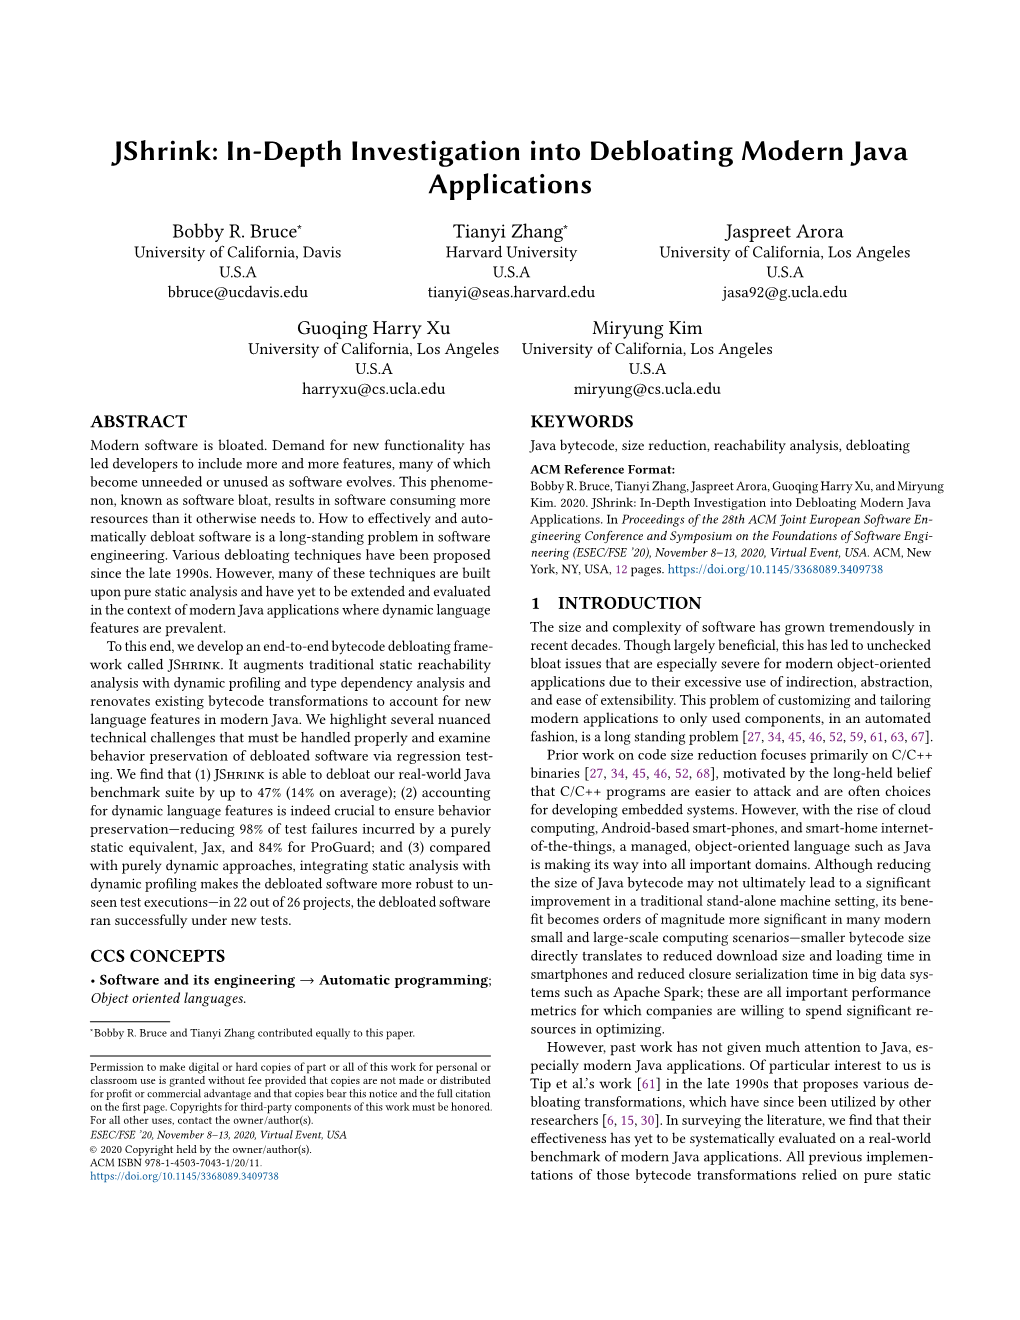 Jshrink: In-Depth Investigation Into Debloating Modern Java Applications